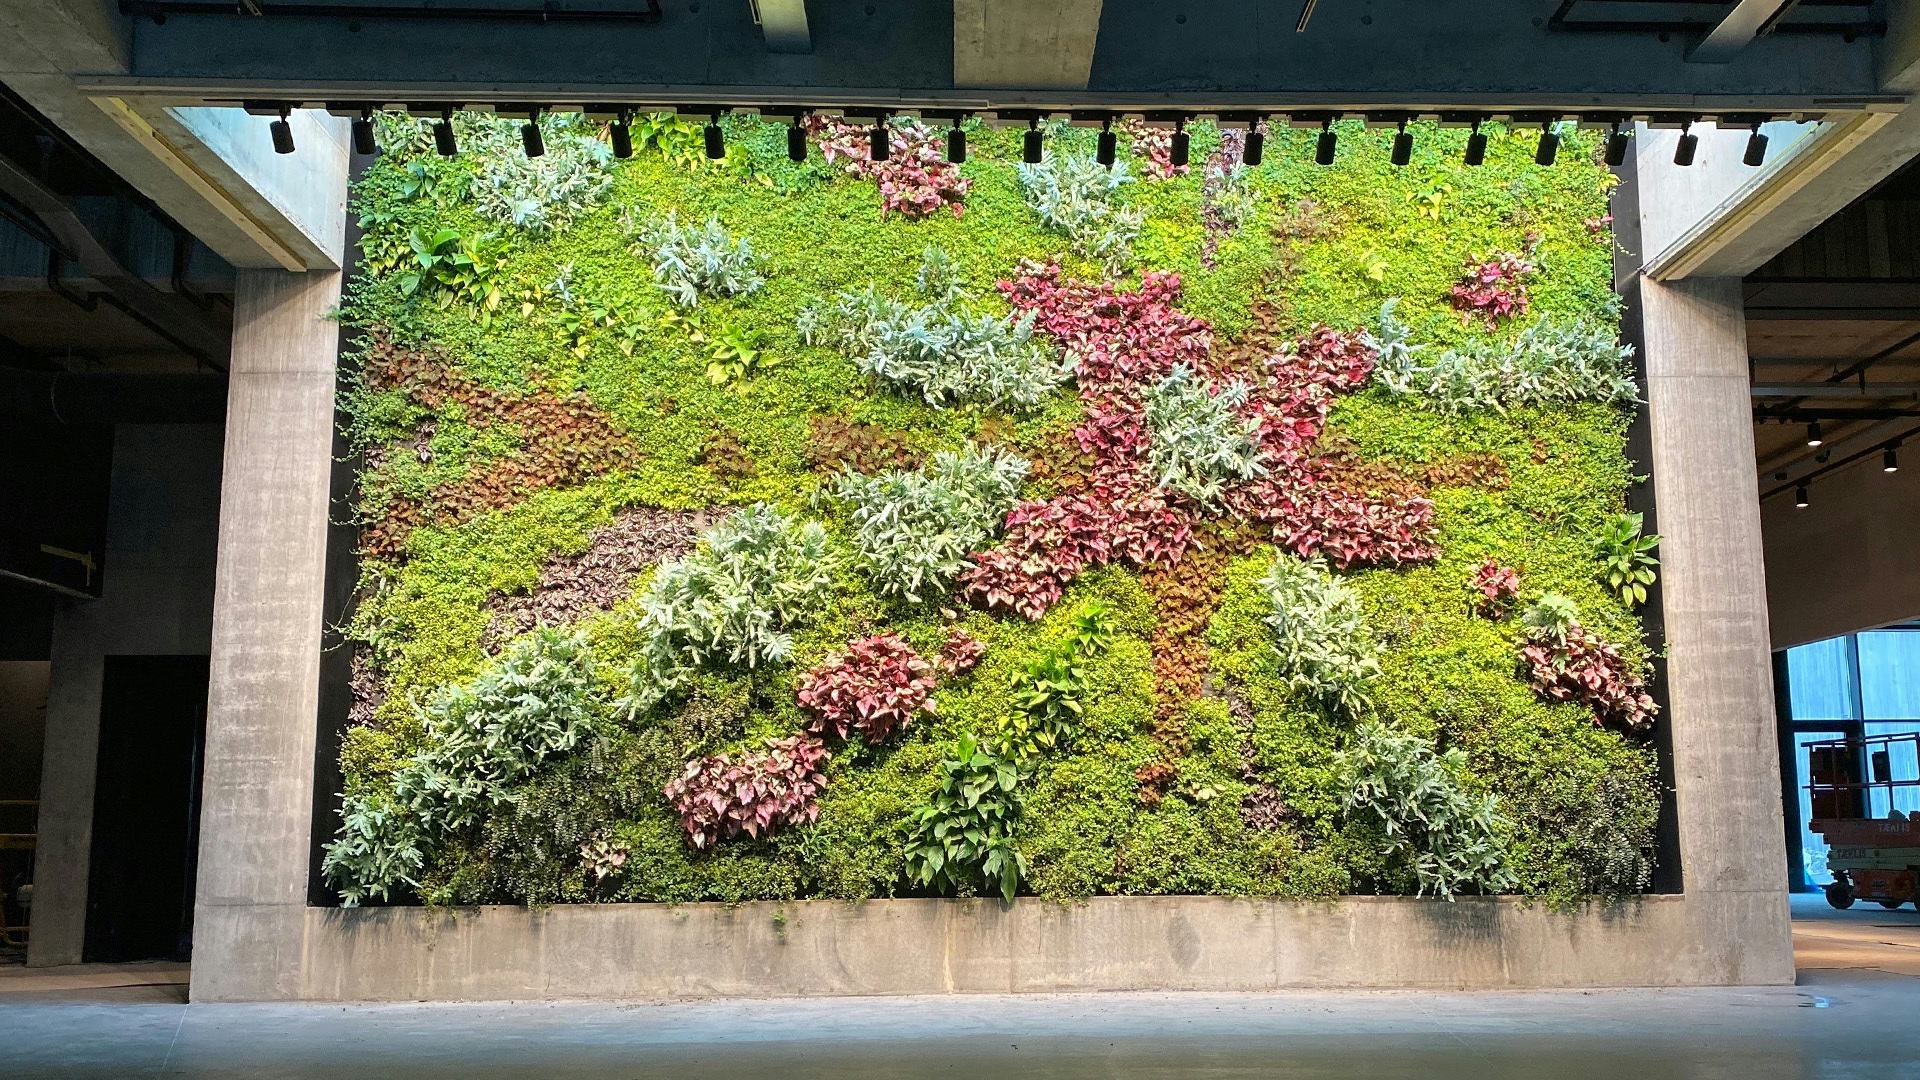 Huge indoor green wall as a display